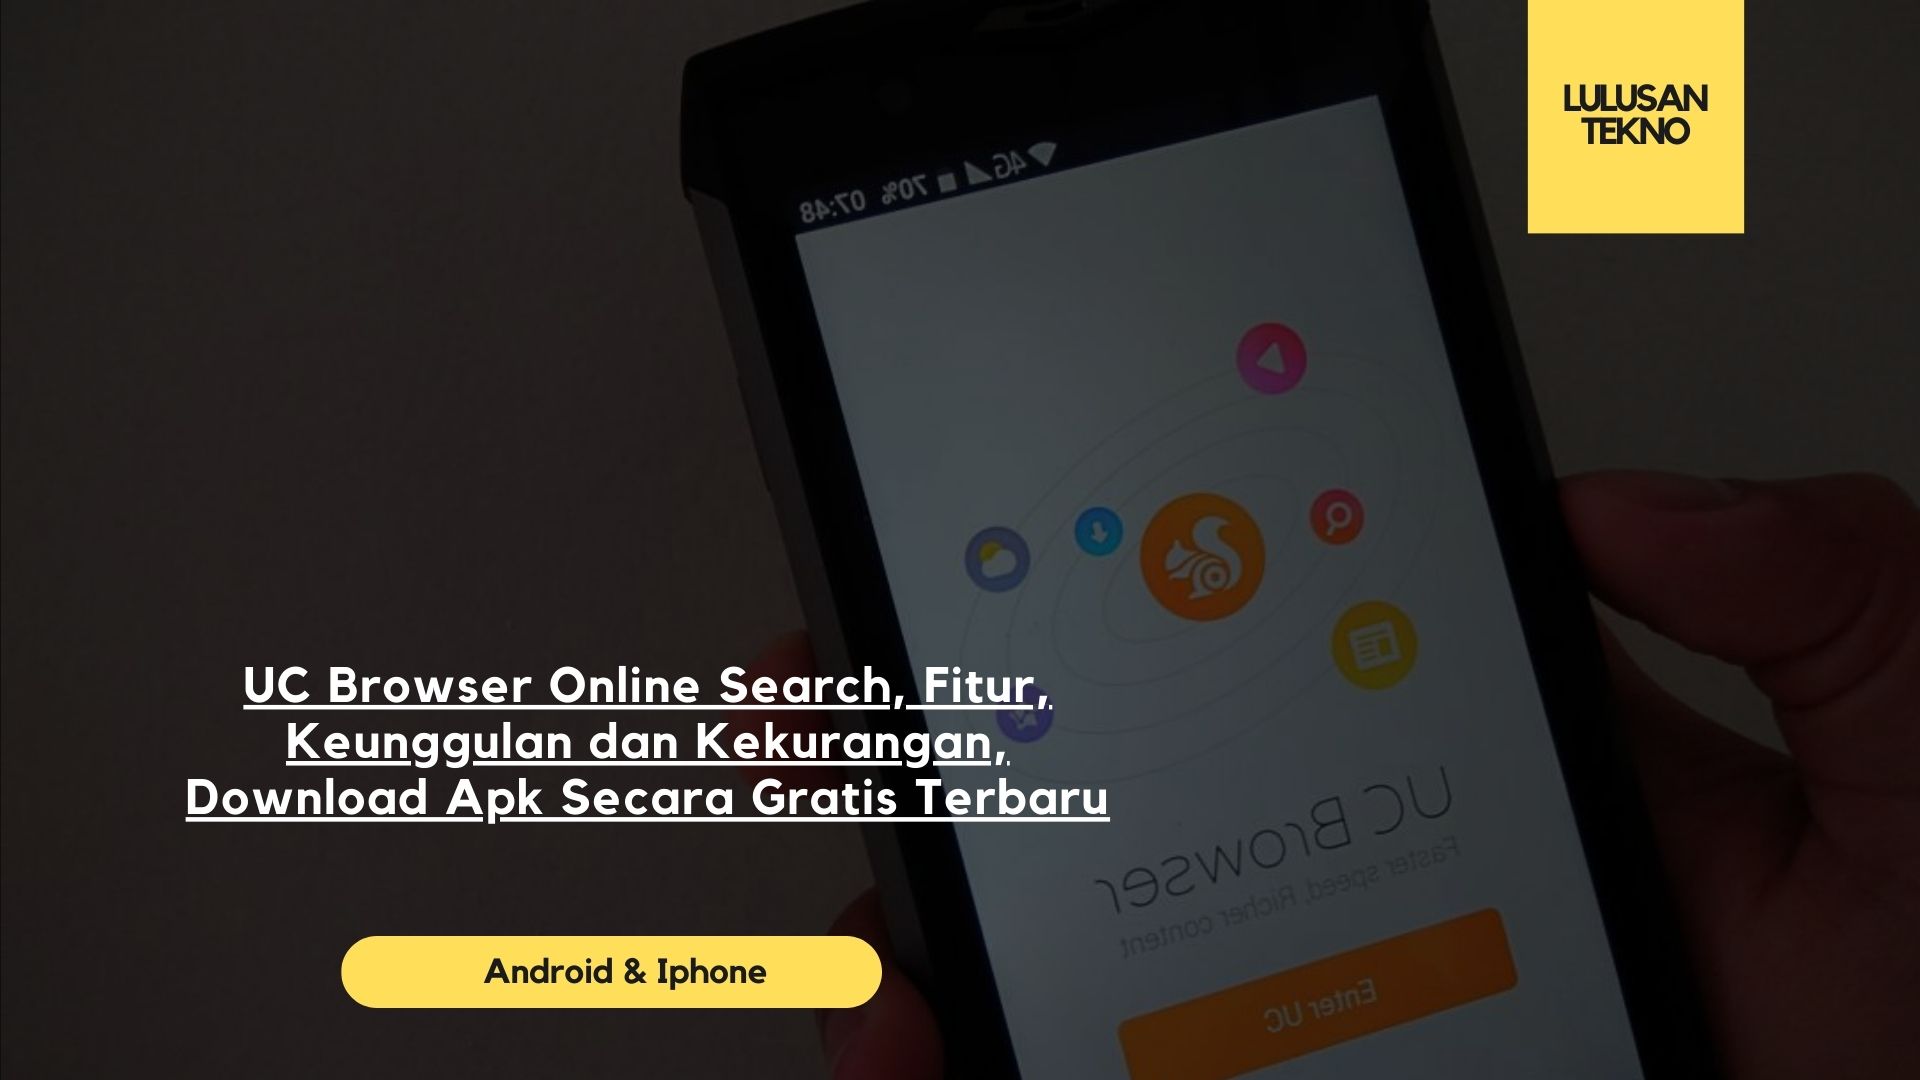 UC Browser Online Search, Fitur, Keunggulan dan Kekurangan, Download Apk Secara Gratis Terbaru